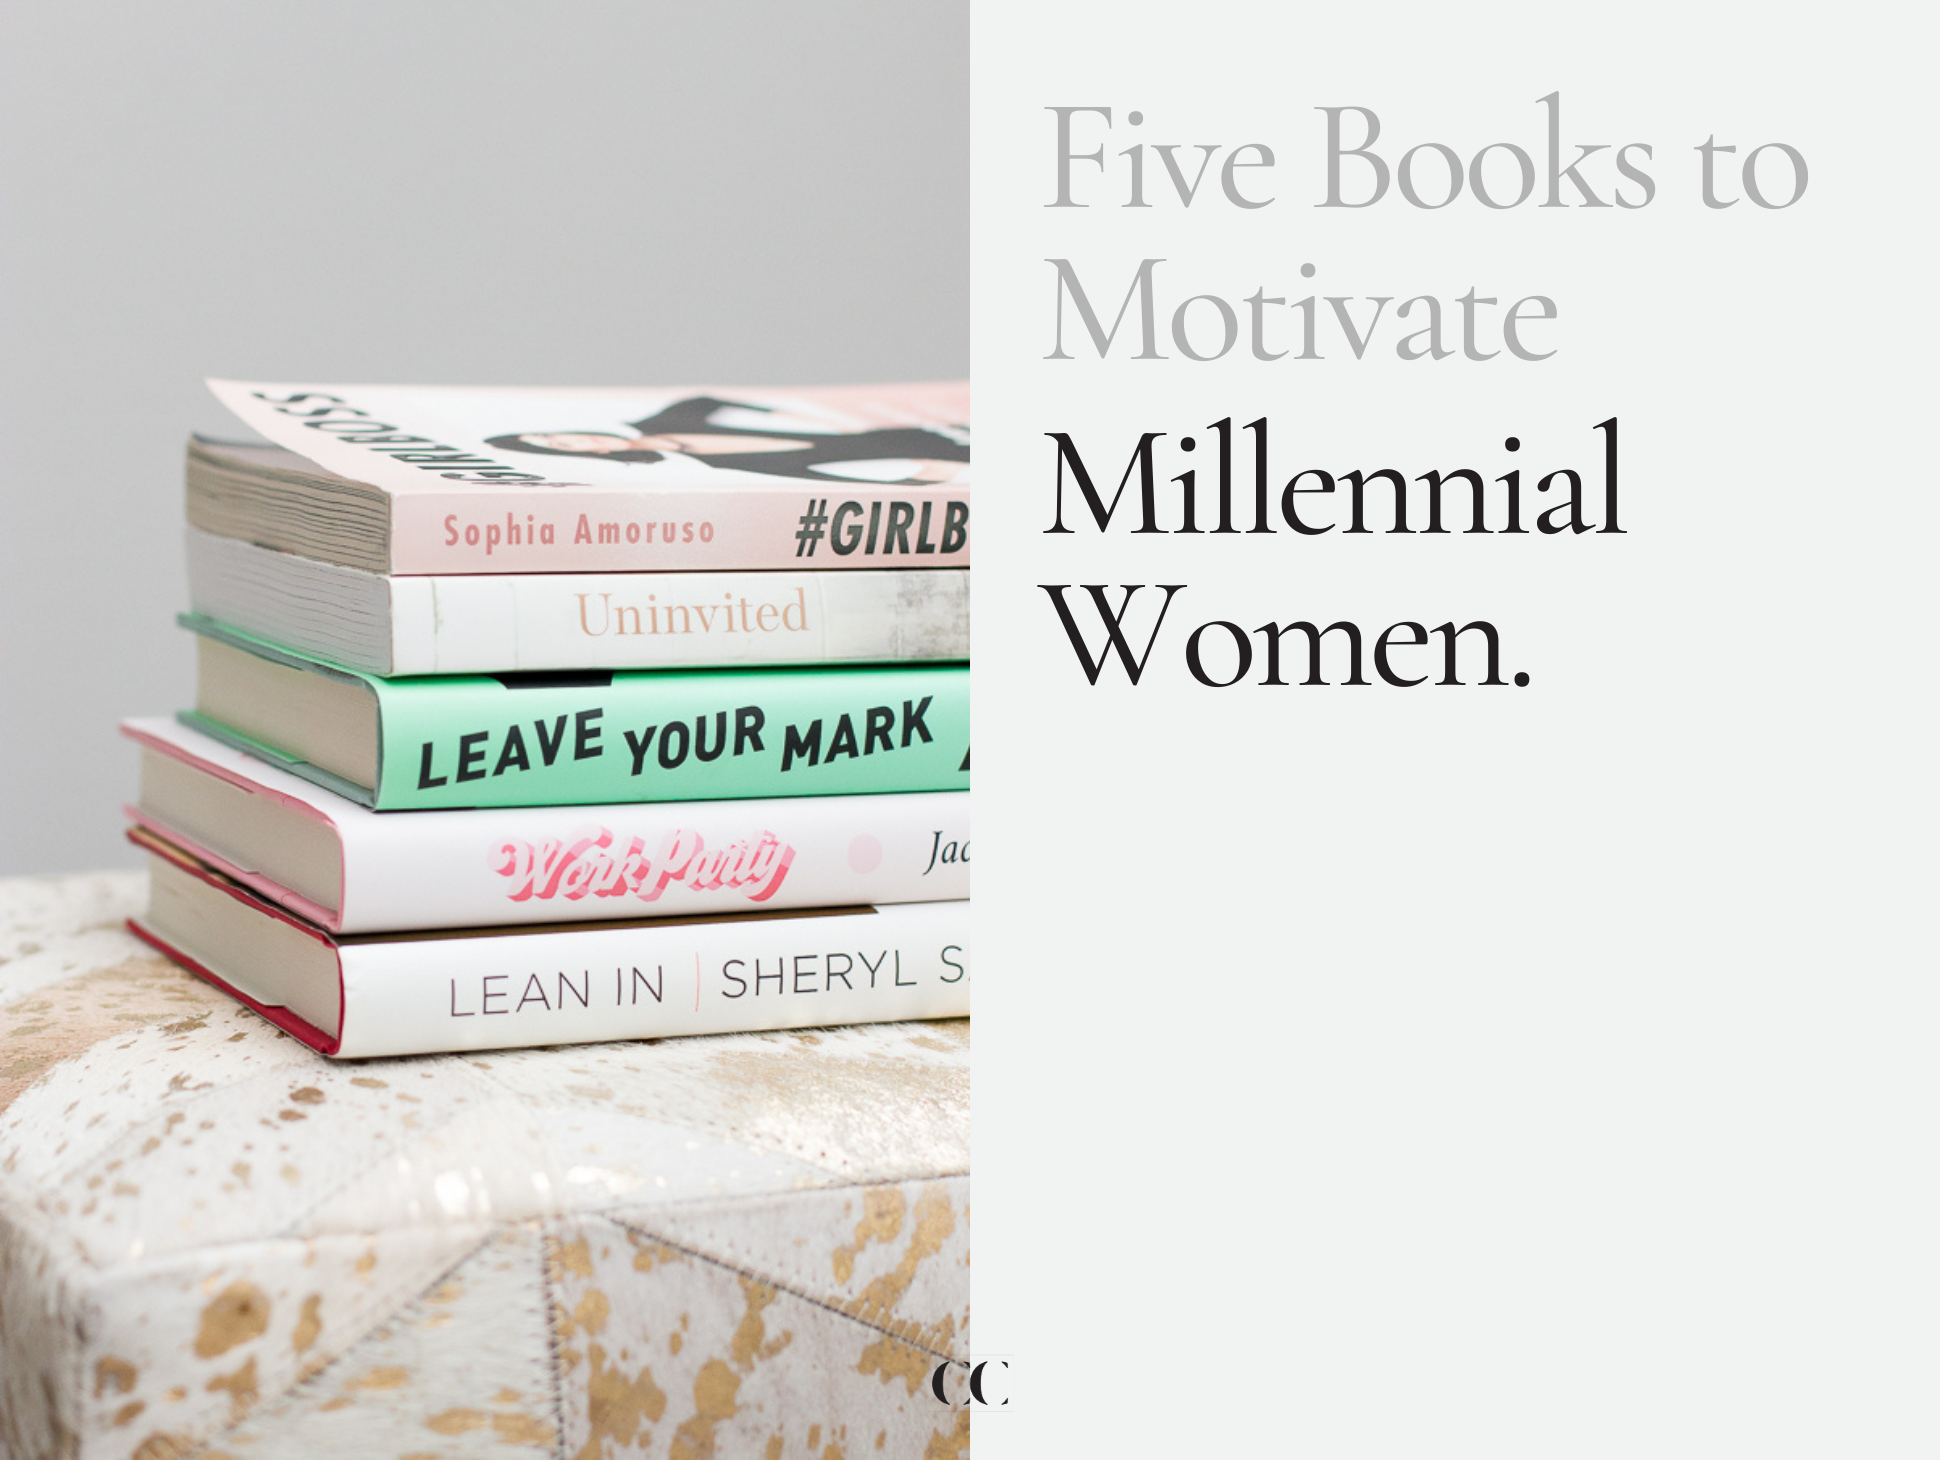 5 Books to Motivate Millennial Women